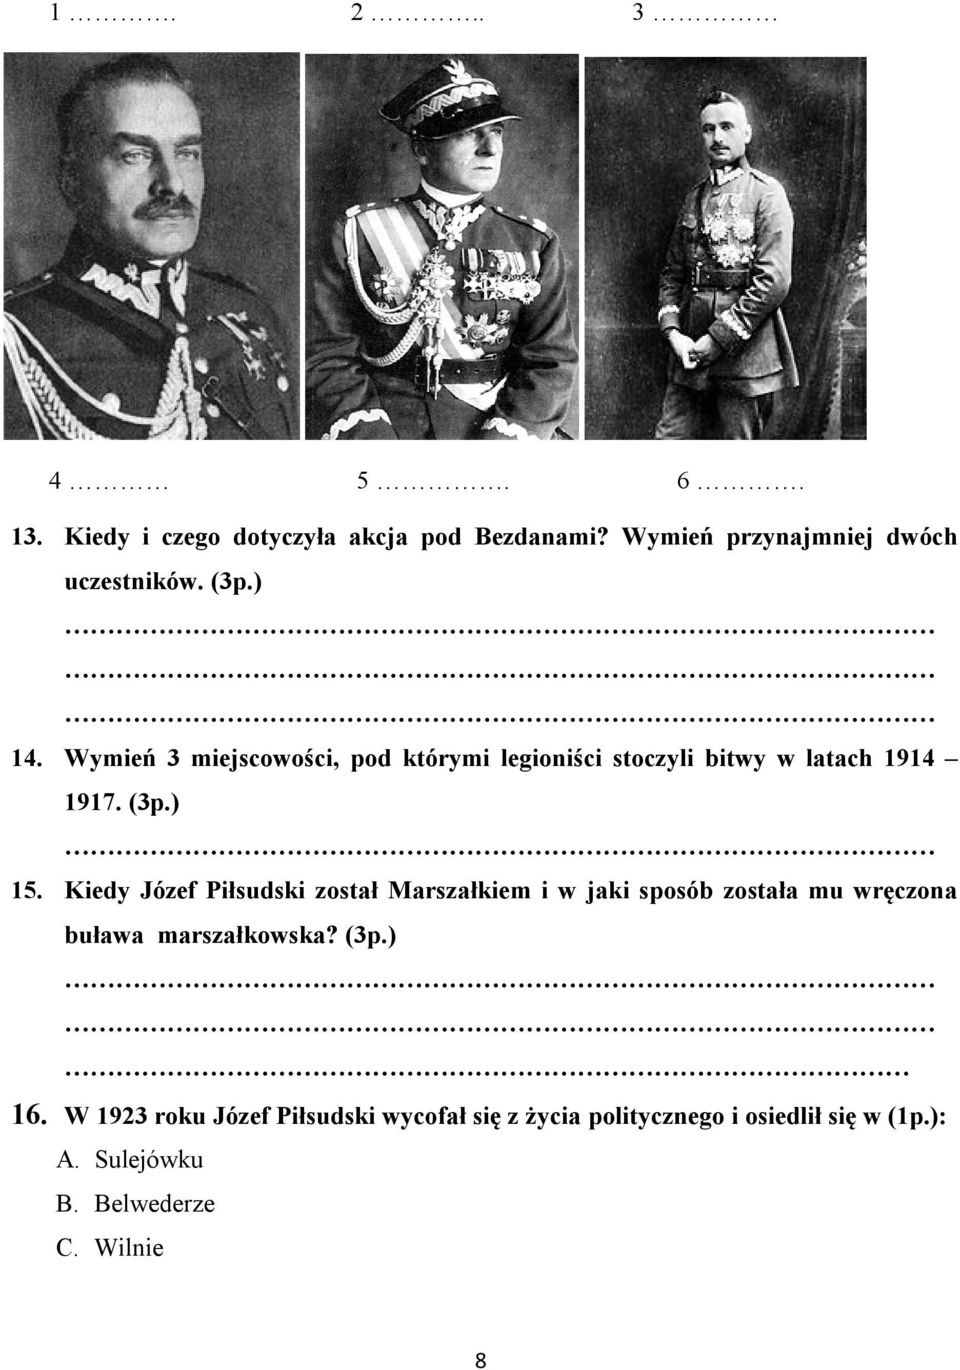 Kiedy Józef Piłsudski został Marszałkiem i w jaki sposób została mu wręczona buława marszałkowska? (3p.) 16.